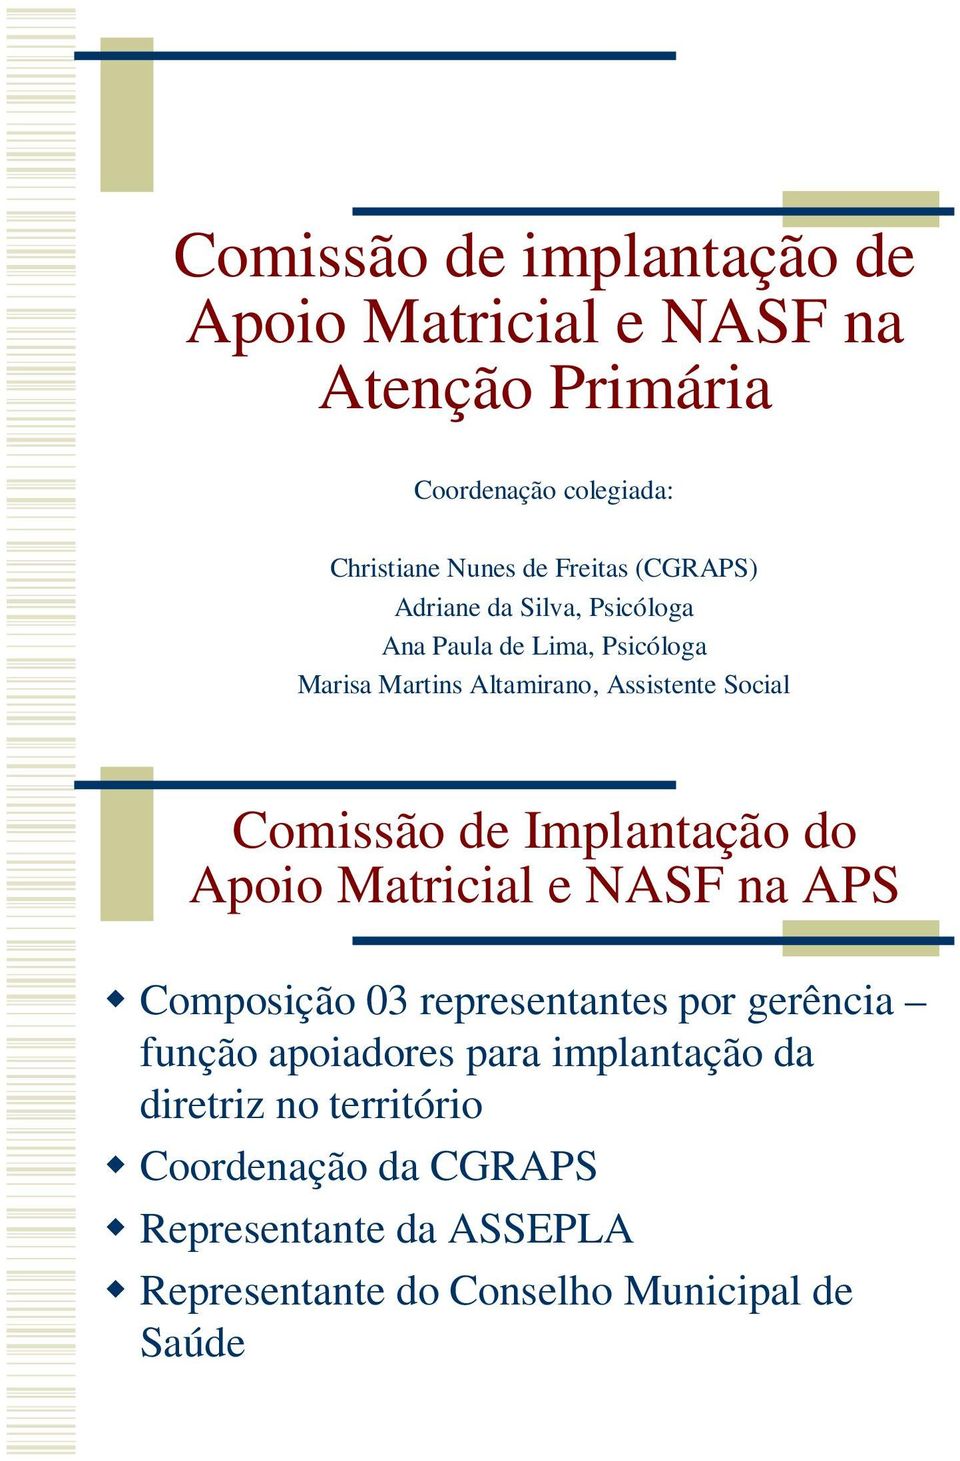 de Implantação do Apoio Matricial e NASF na APS Composição 03 representantes por gerência função apoiadores para